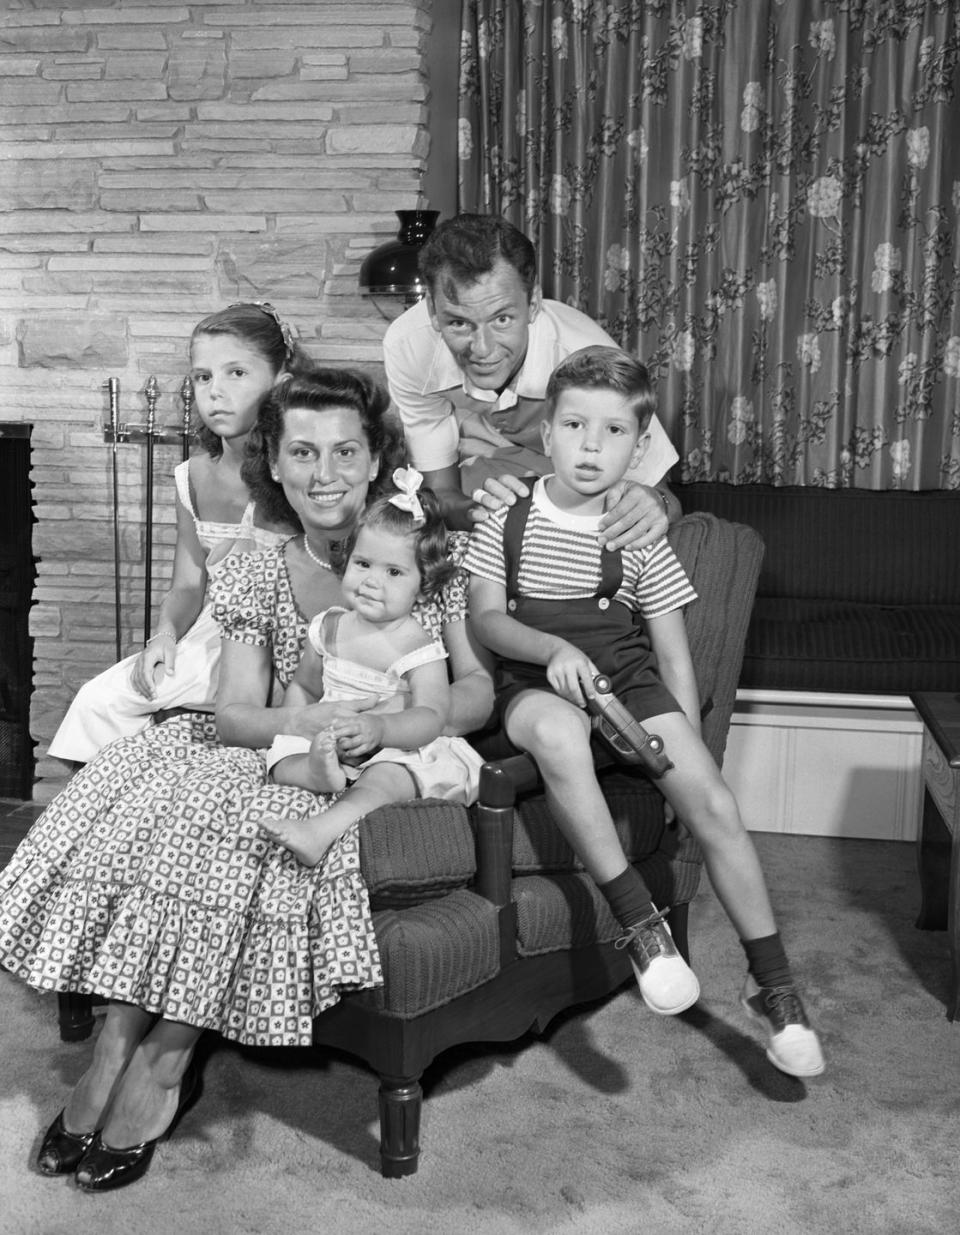 1949: Life at Home